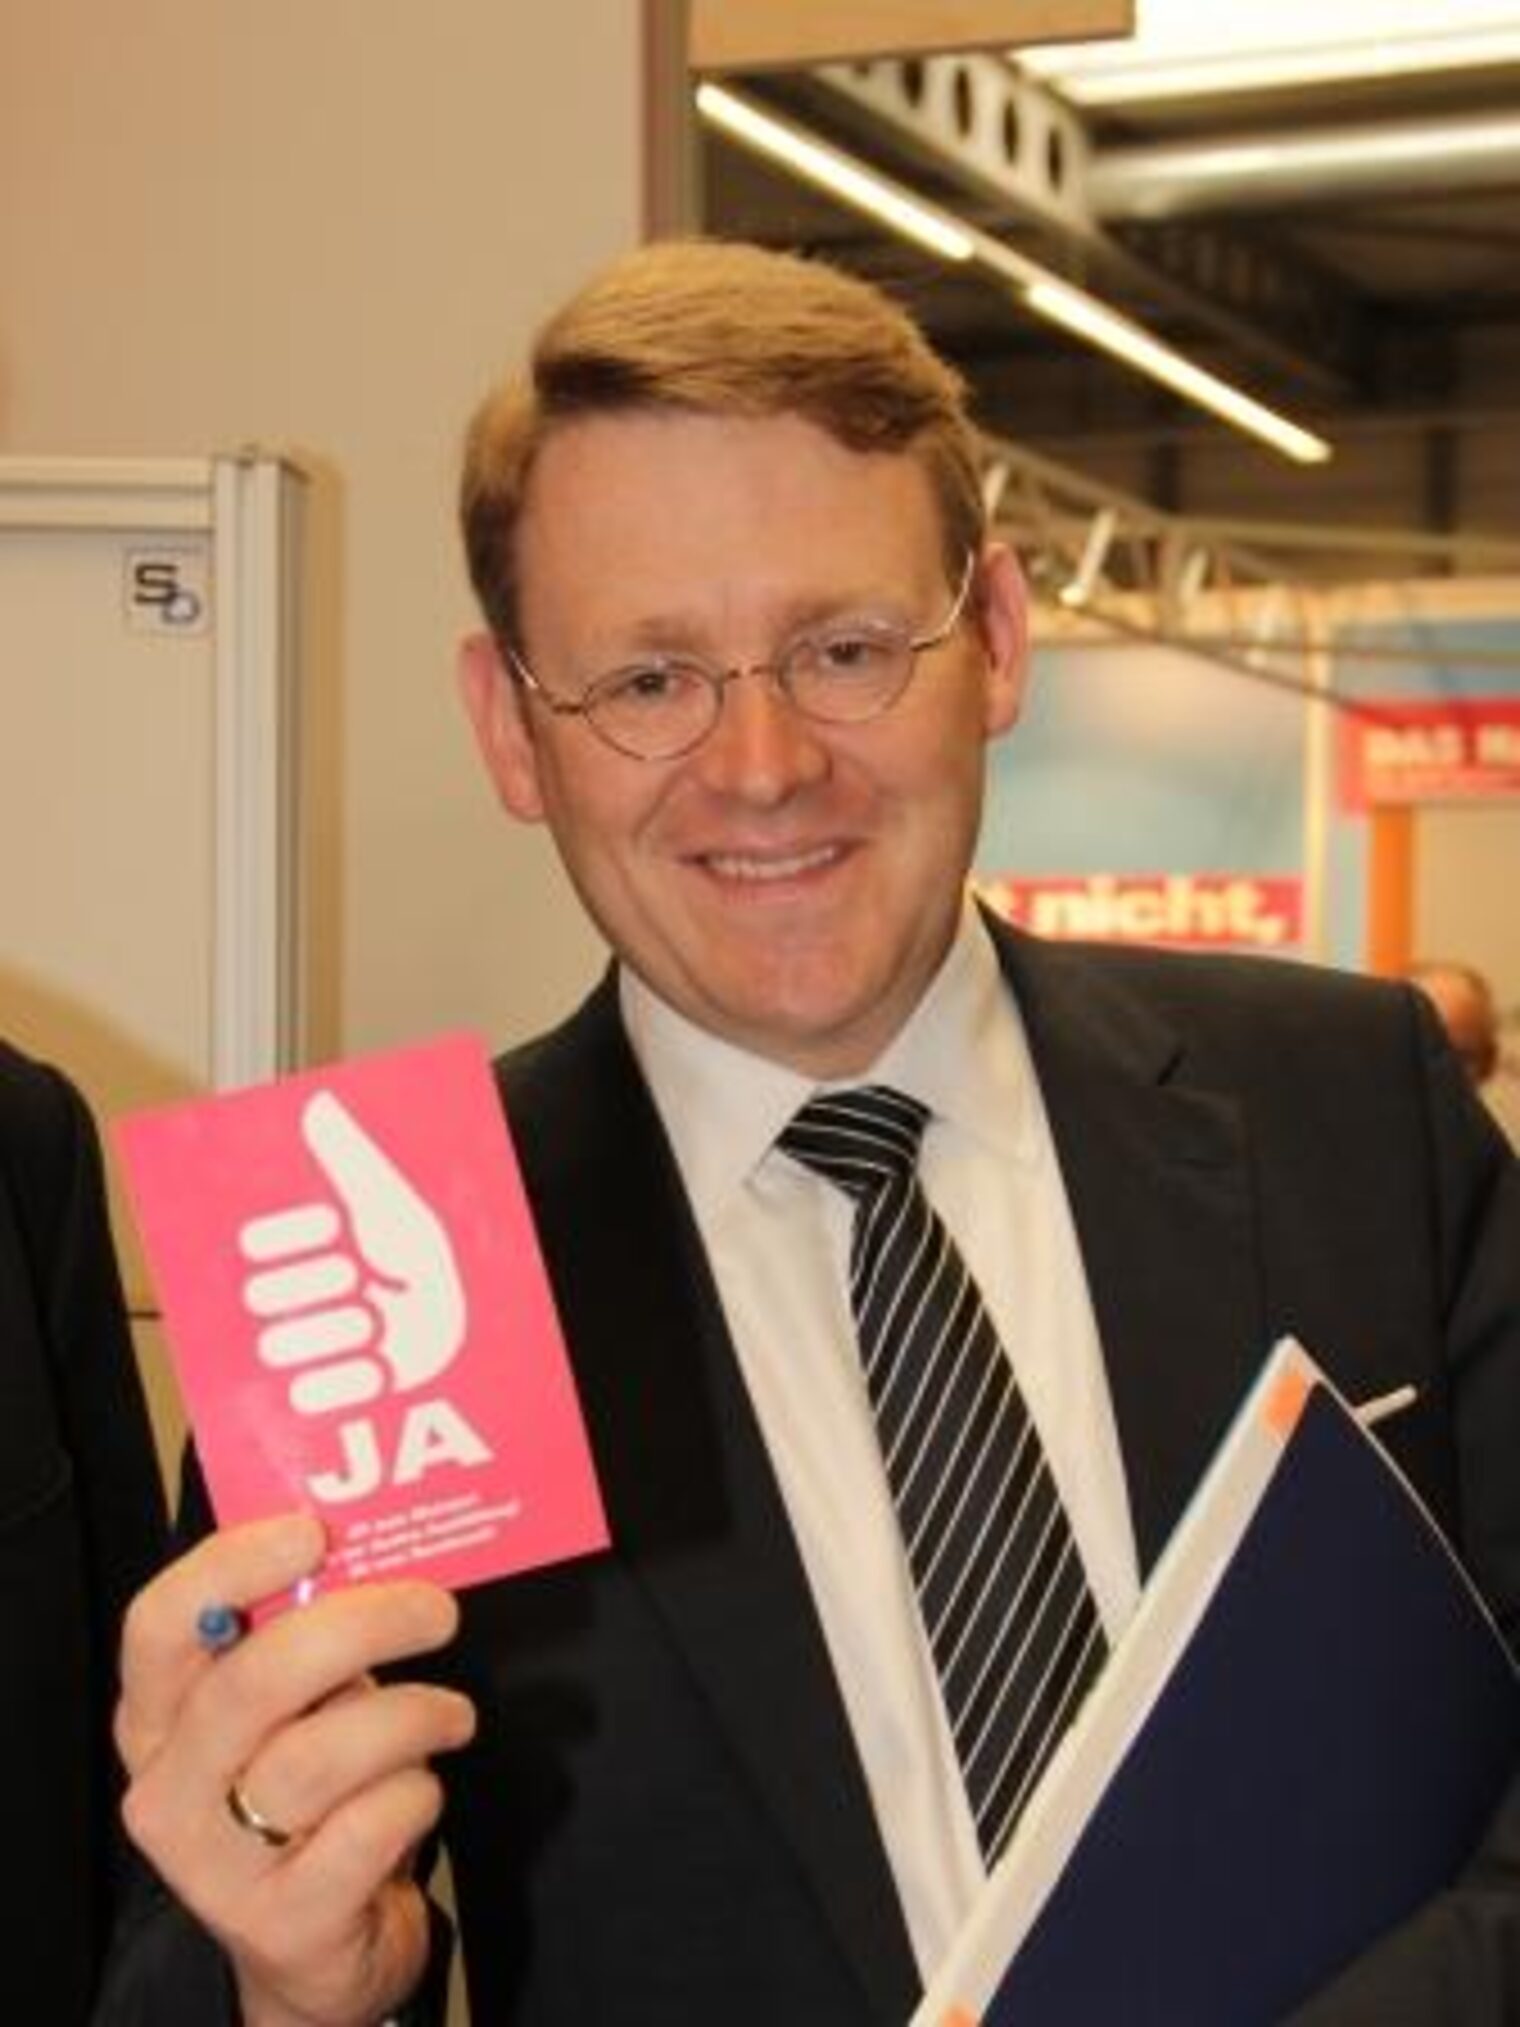 Thüringens Bau- und Verkehrsminister Christian Carius unterzeichnete während der Messe "Haus.Bau.Energie." die Aktionskarte "Ja zum Meister".